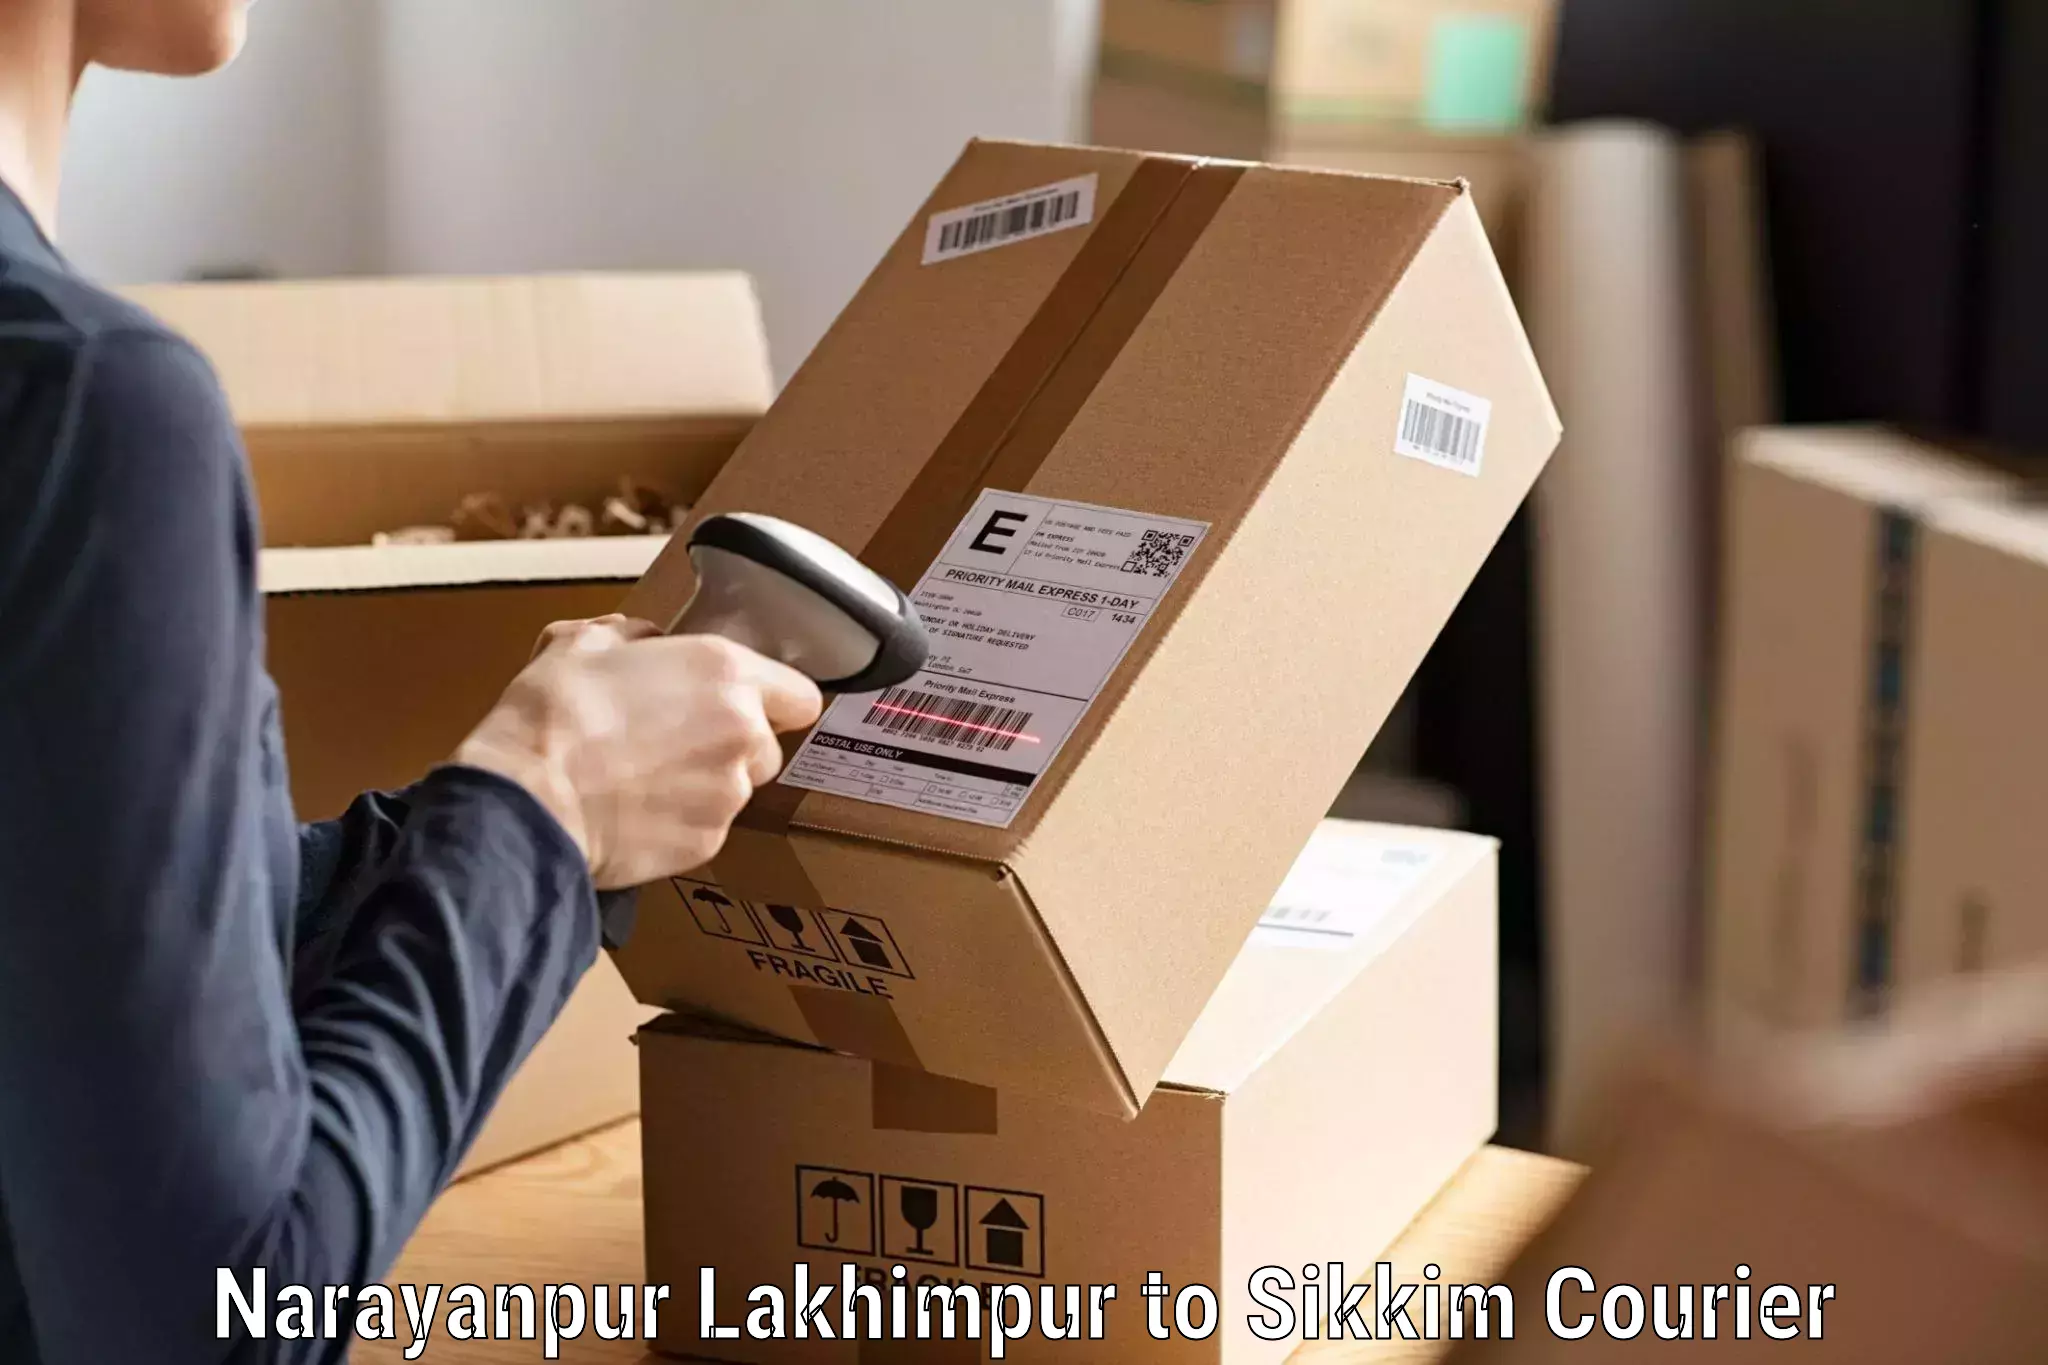 Efficient shipping platforms Narayanpur Lakhimpur to Geyzing